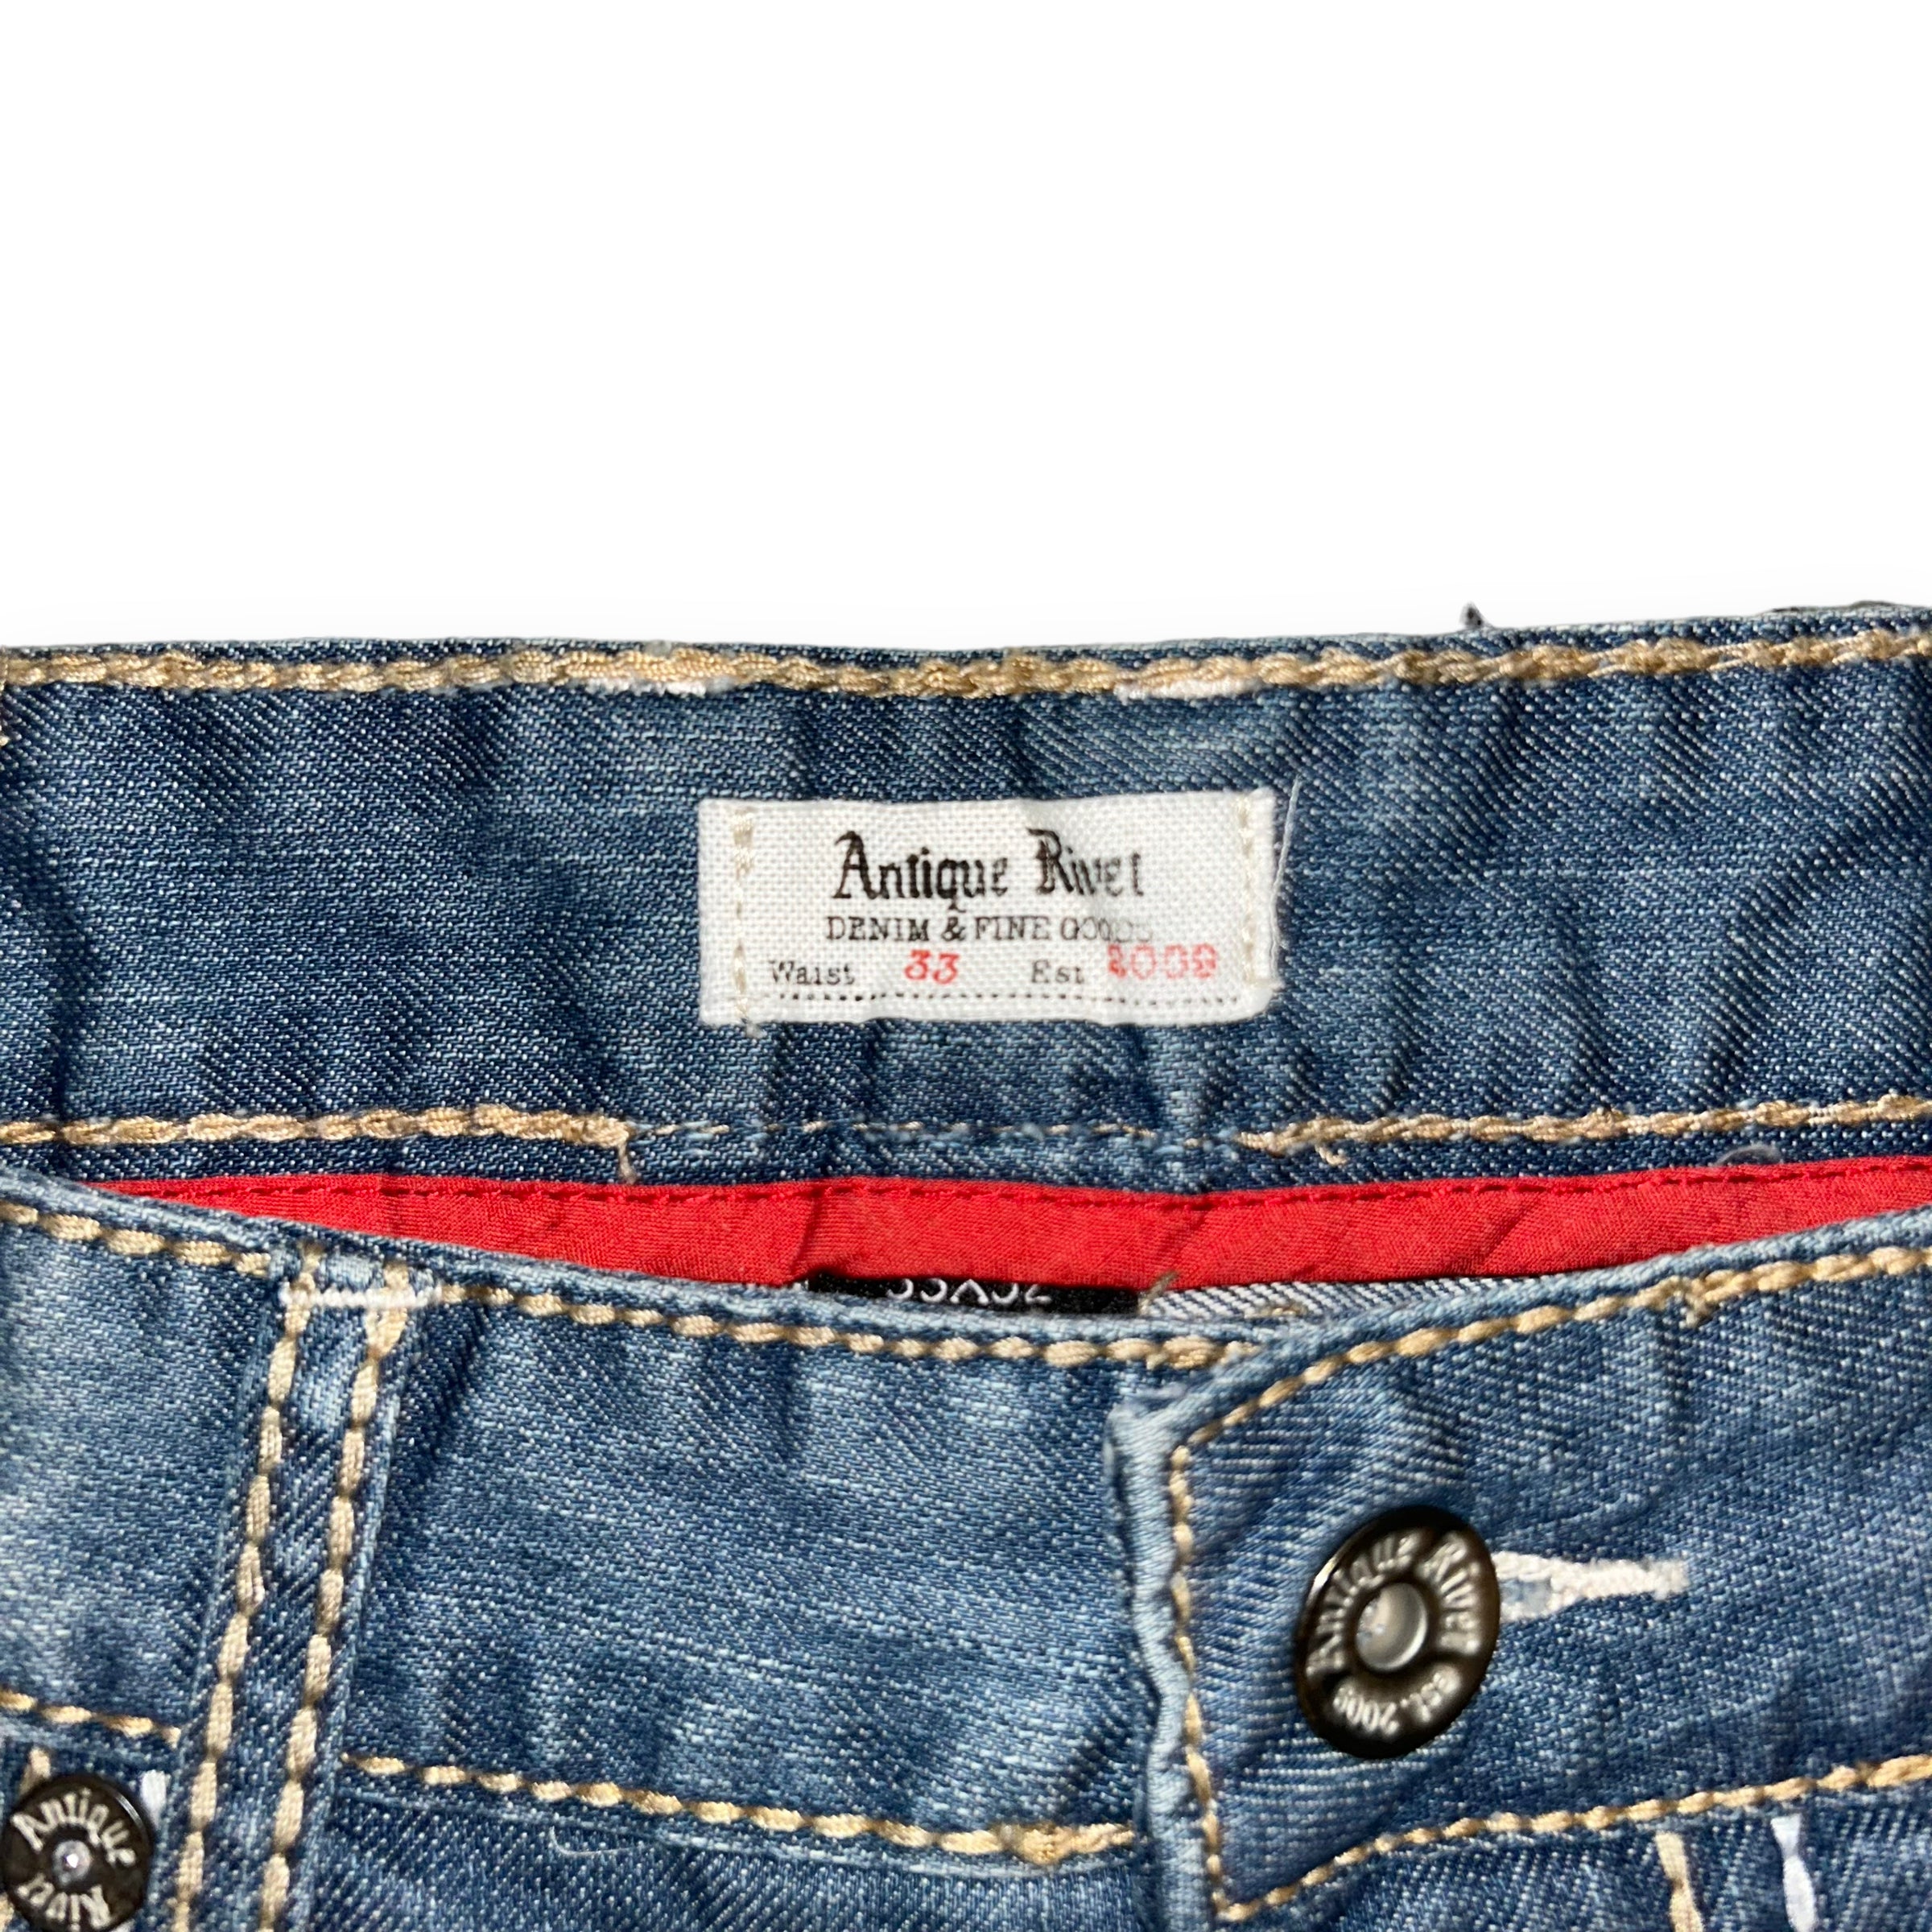 Jeans Antique River  (34 USA  L)